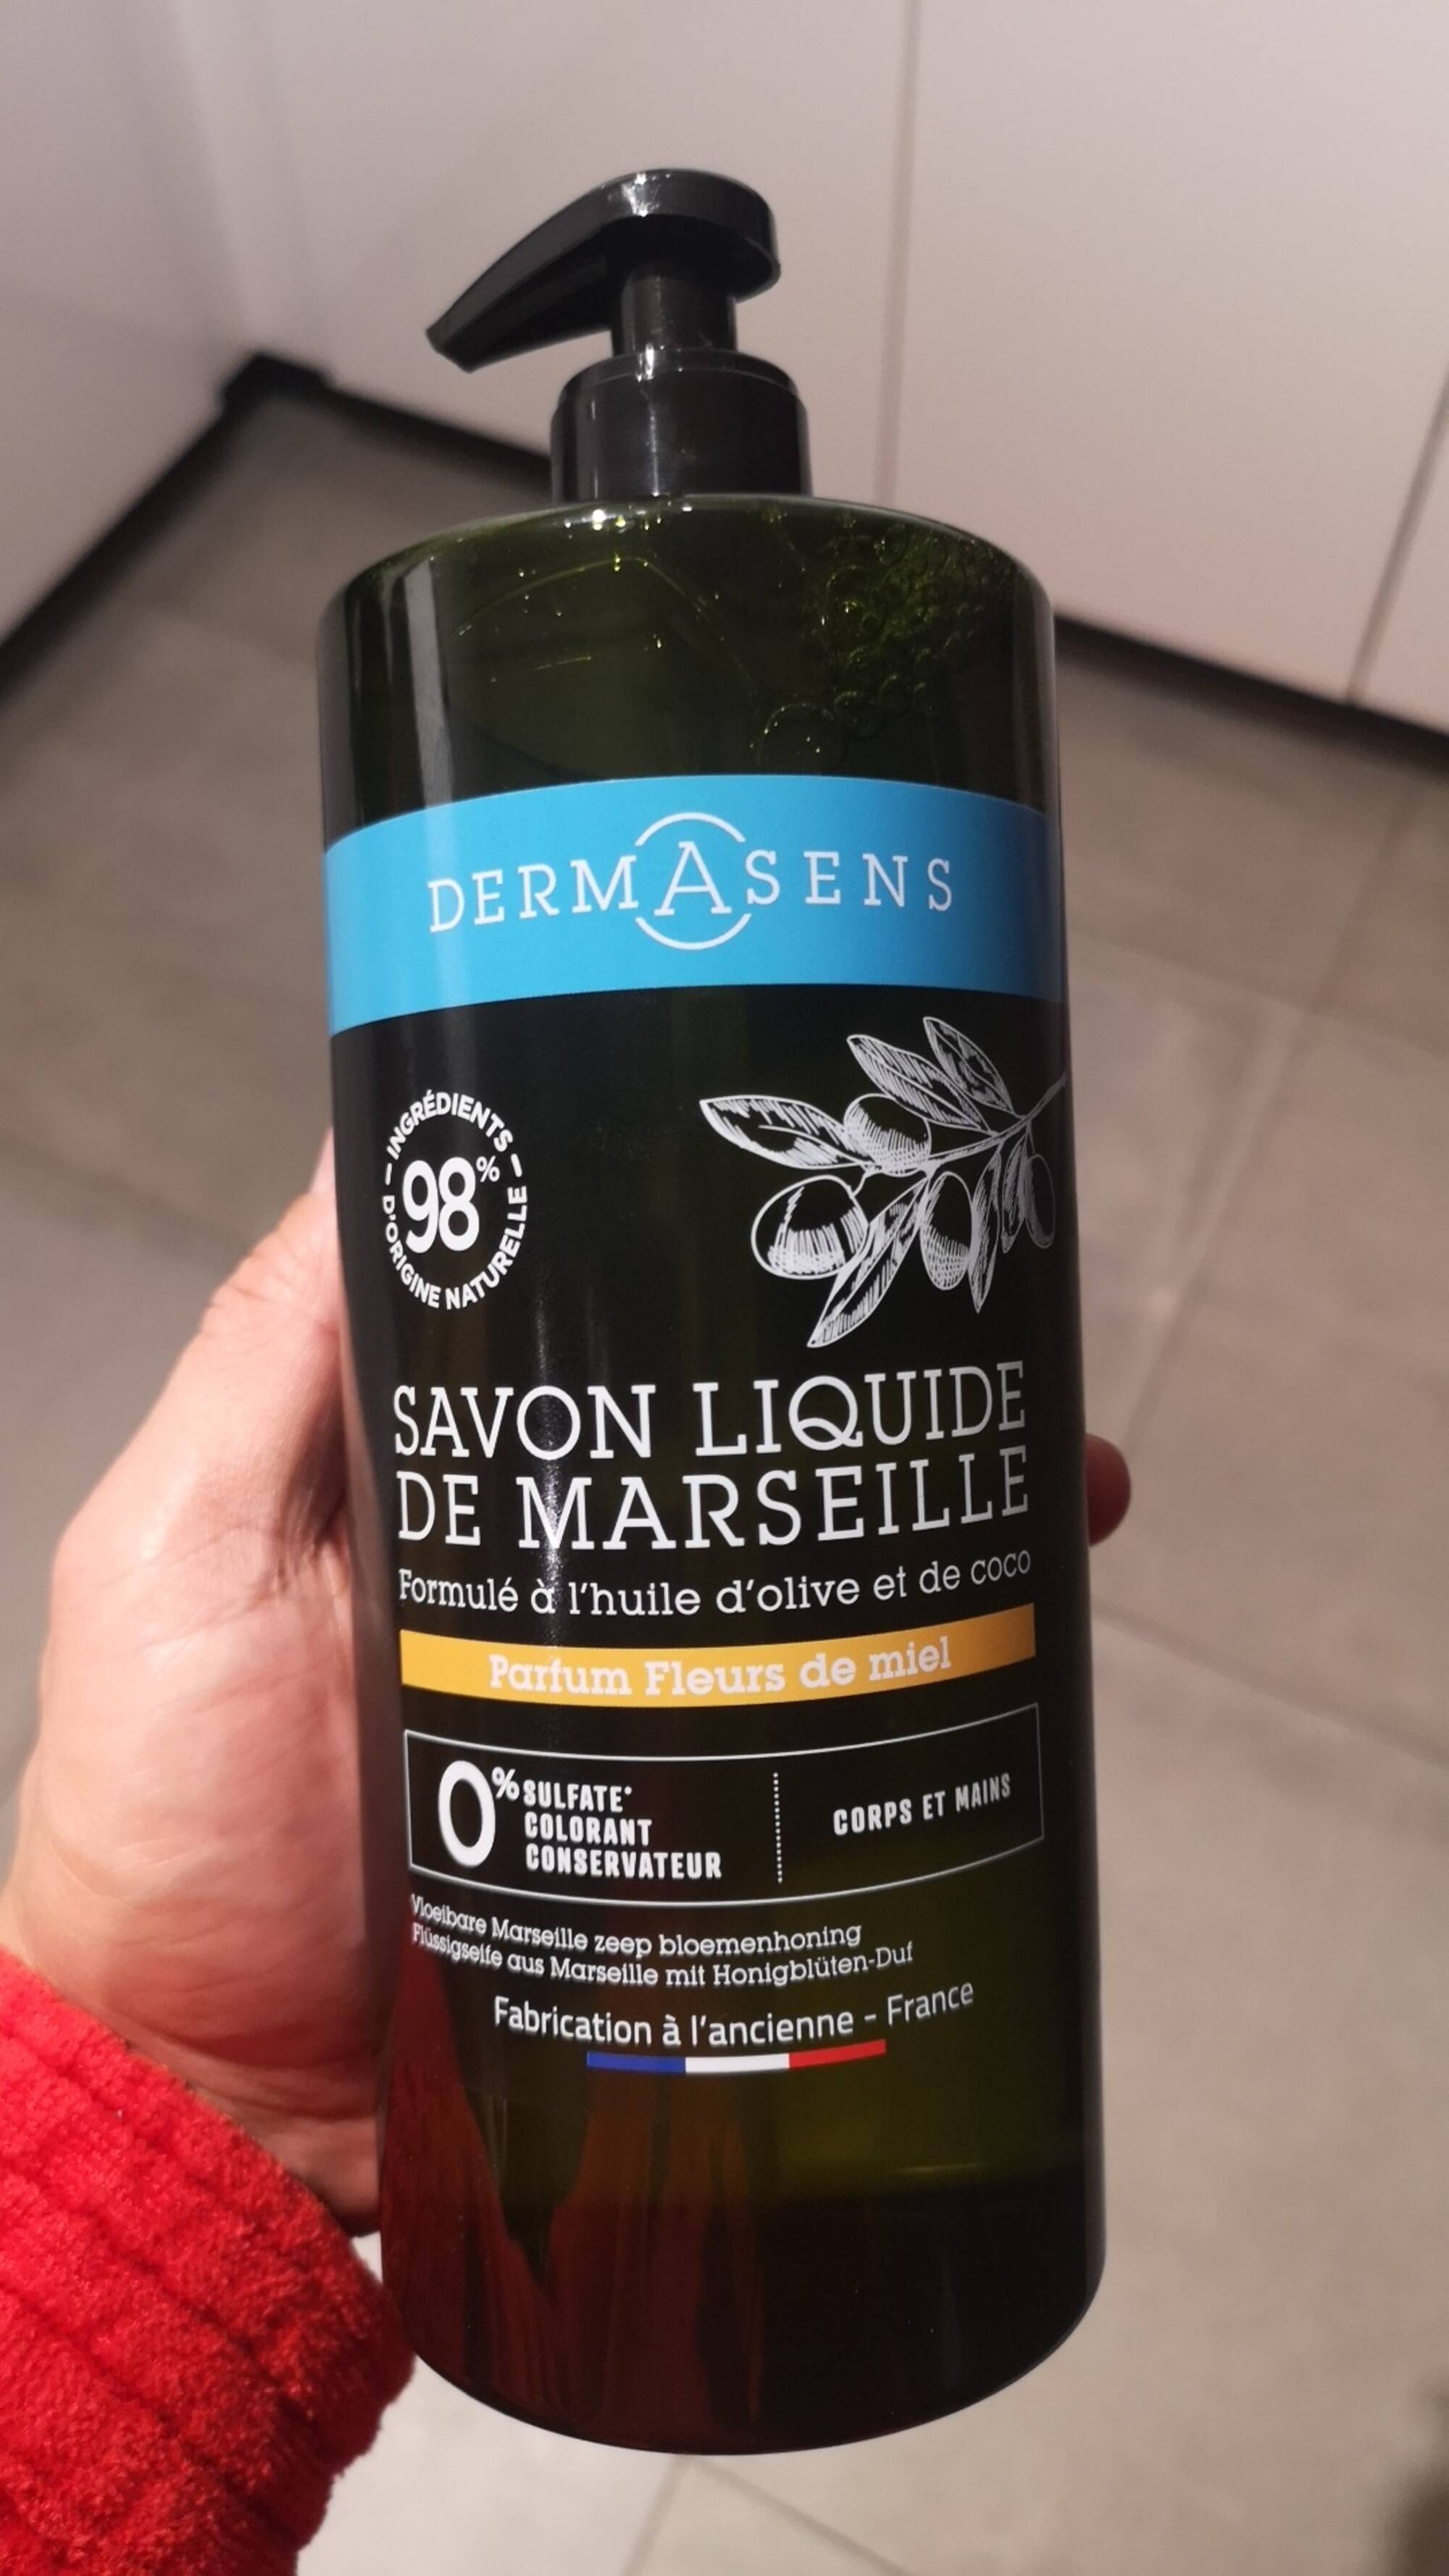 DERMASENS - Savon liquide de Marseille parfum fleurs de miel